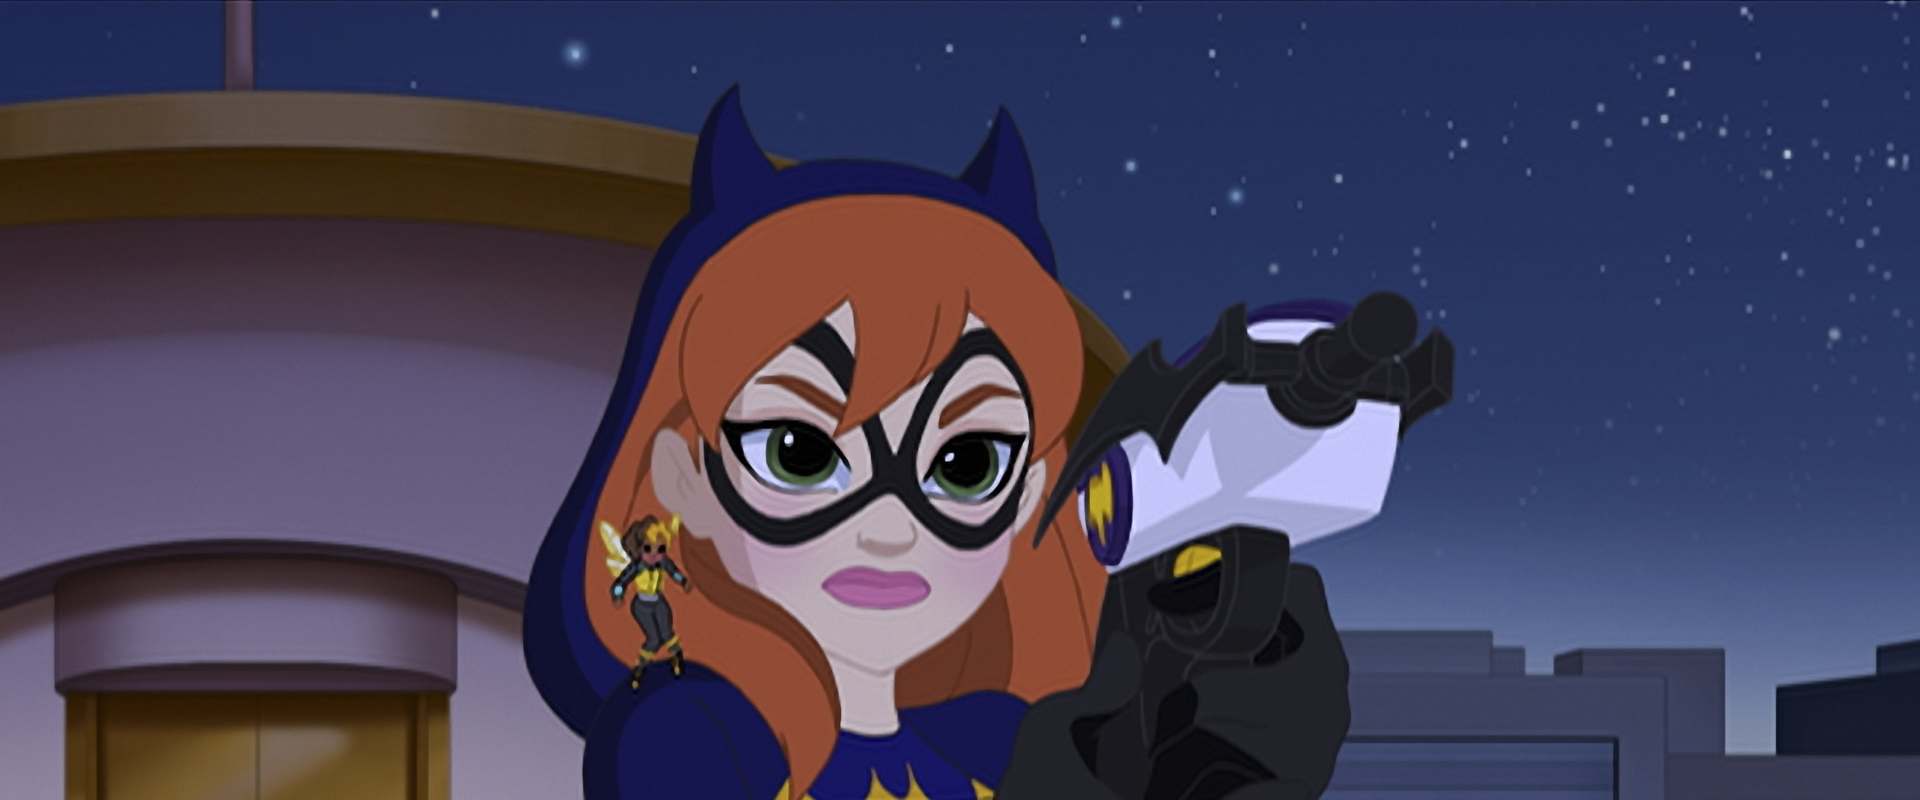 DC Super Hero Girls: Hero of the Year background 2